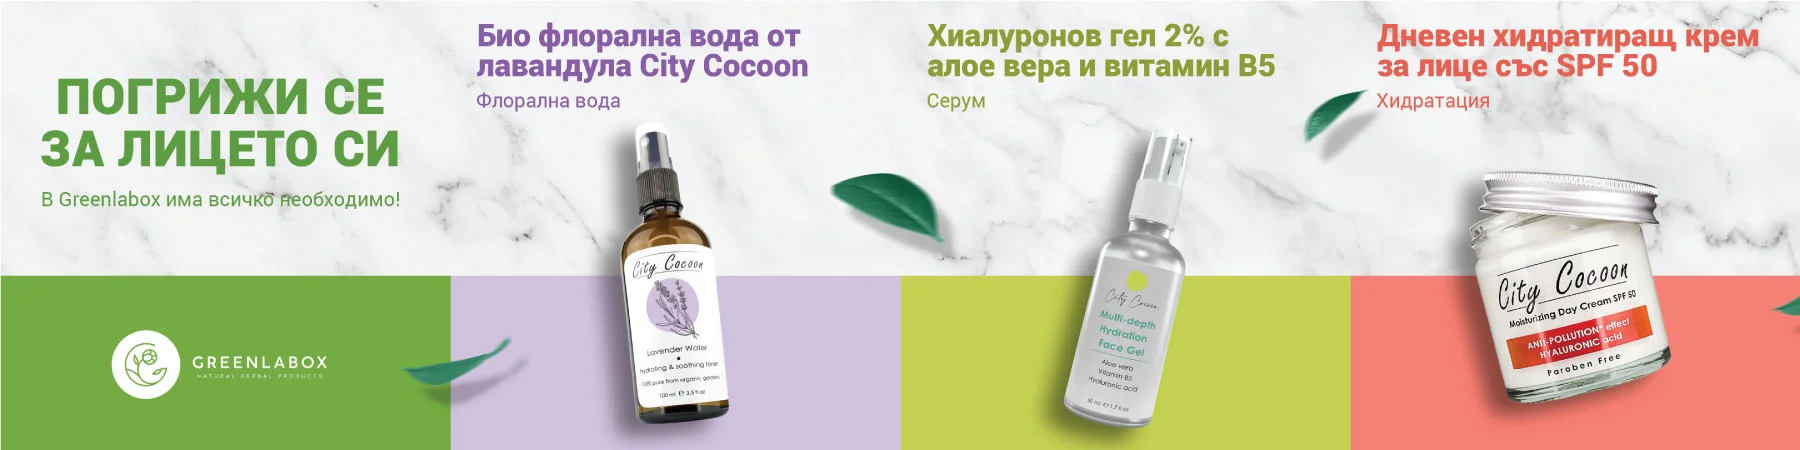 naturalna kozmetika za lice greenlabox.bg